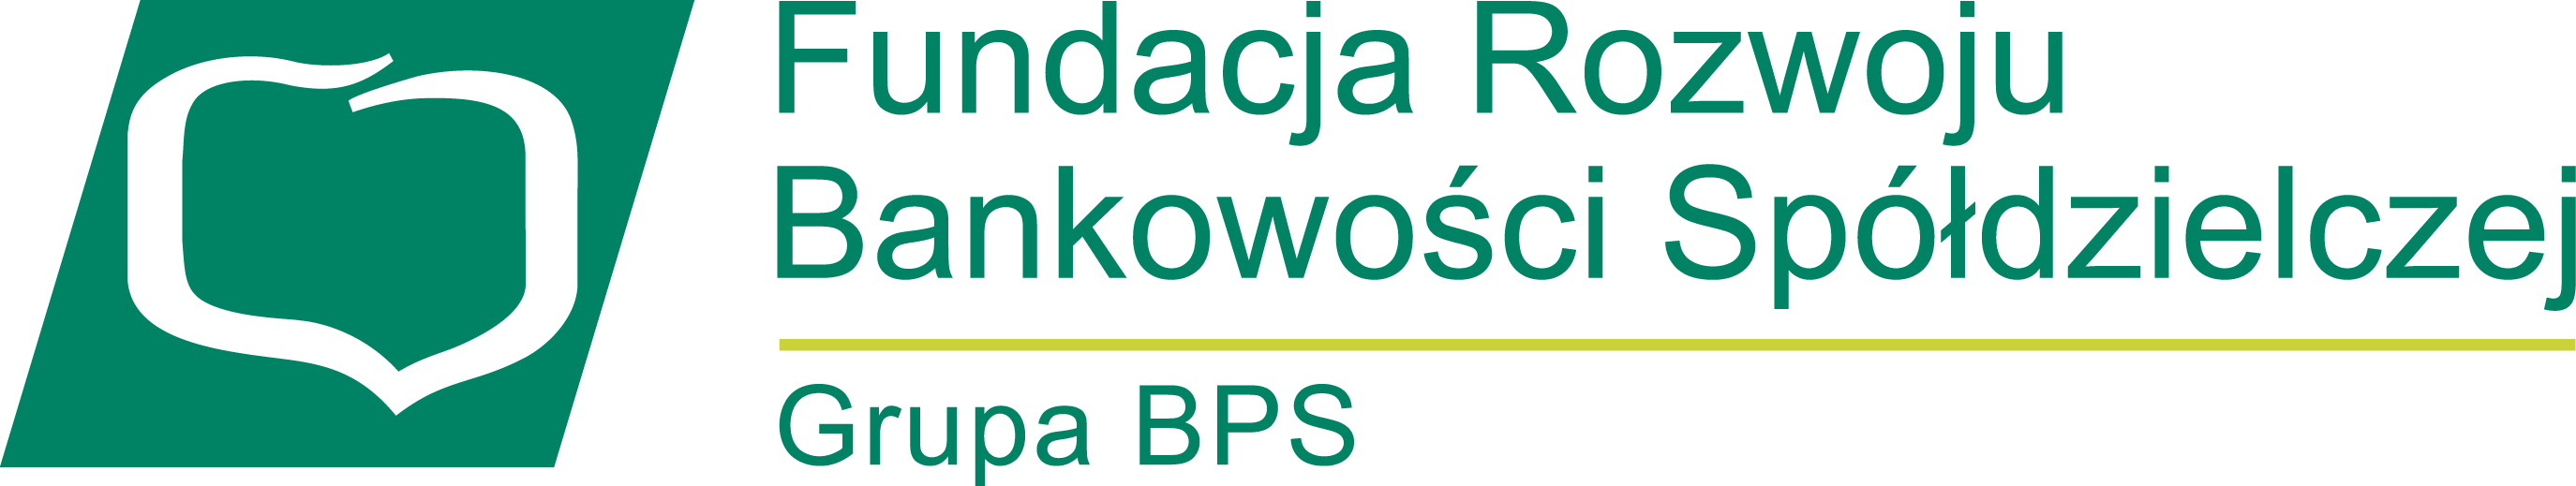 Logo Fundacja Rozwoju Bankowości Spółdzielczej